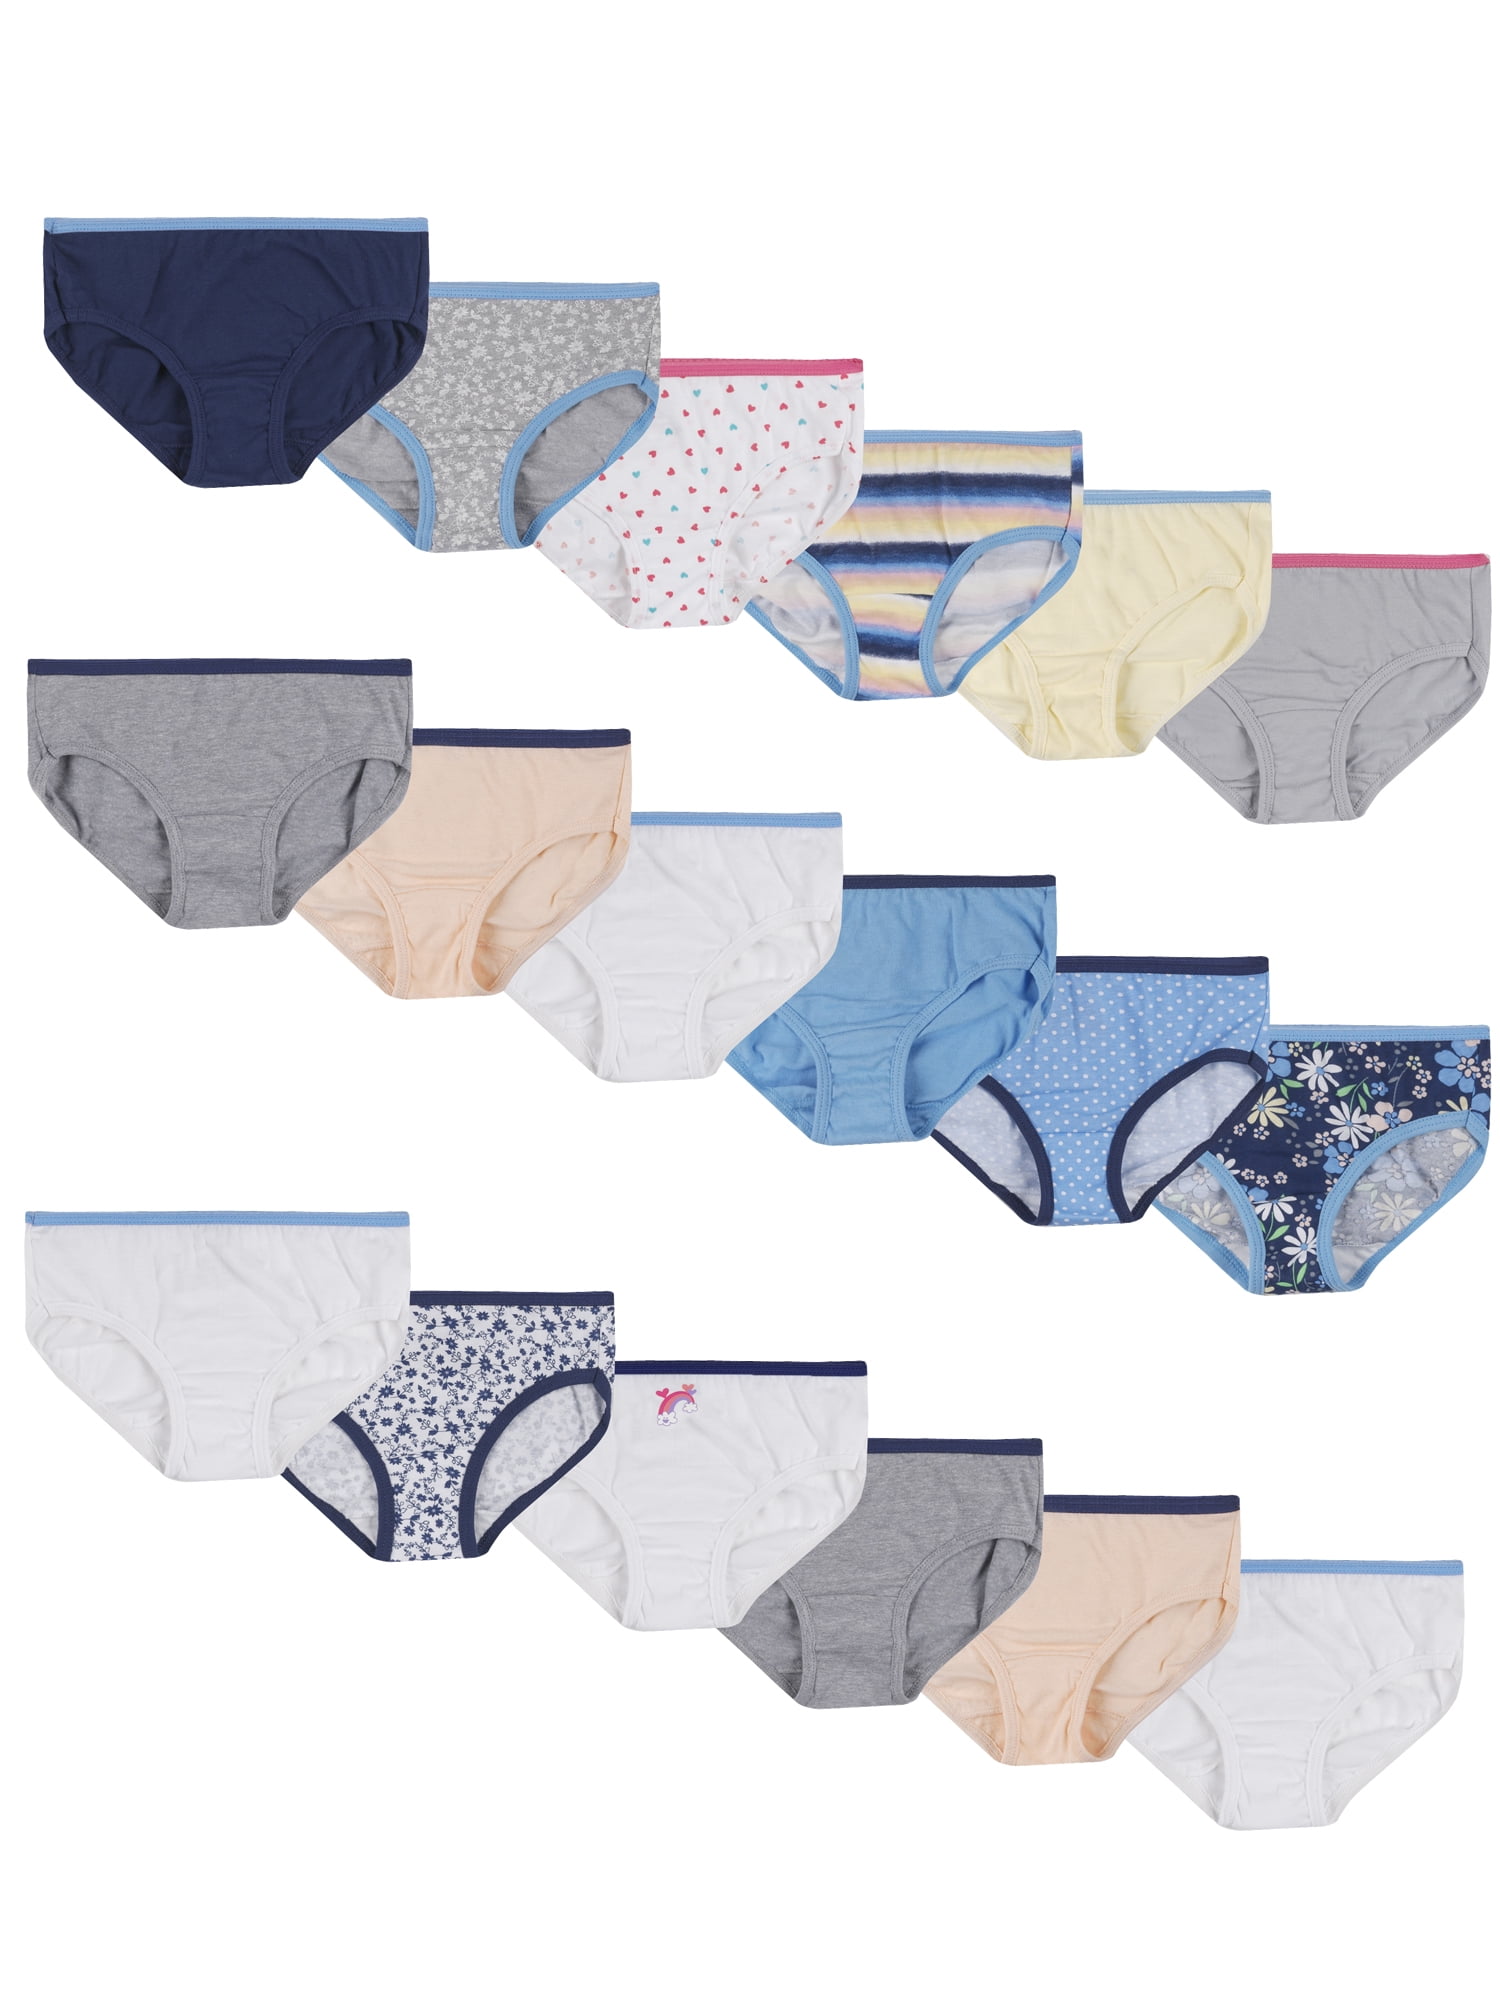 Hanes Girls Underwear, 14 + 4 Bonus Pack Tagless Girls Briefs Sizes 4 - 14  